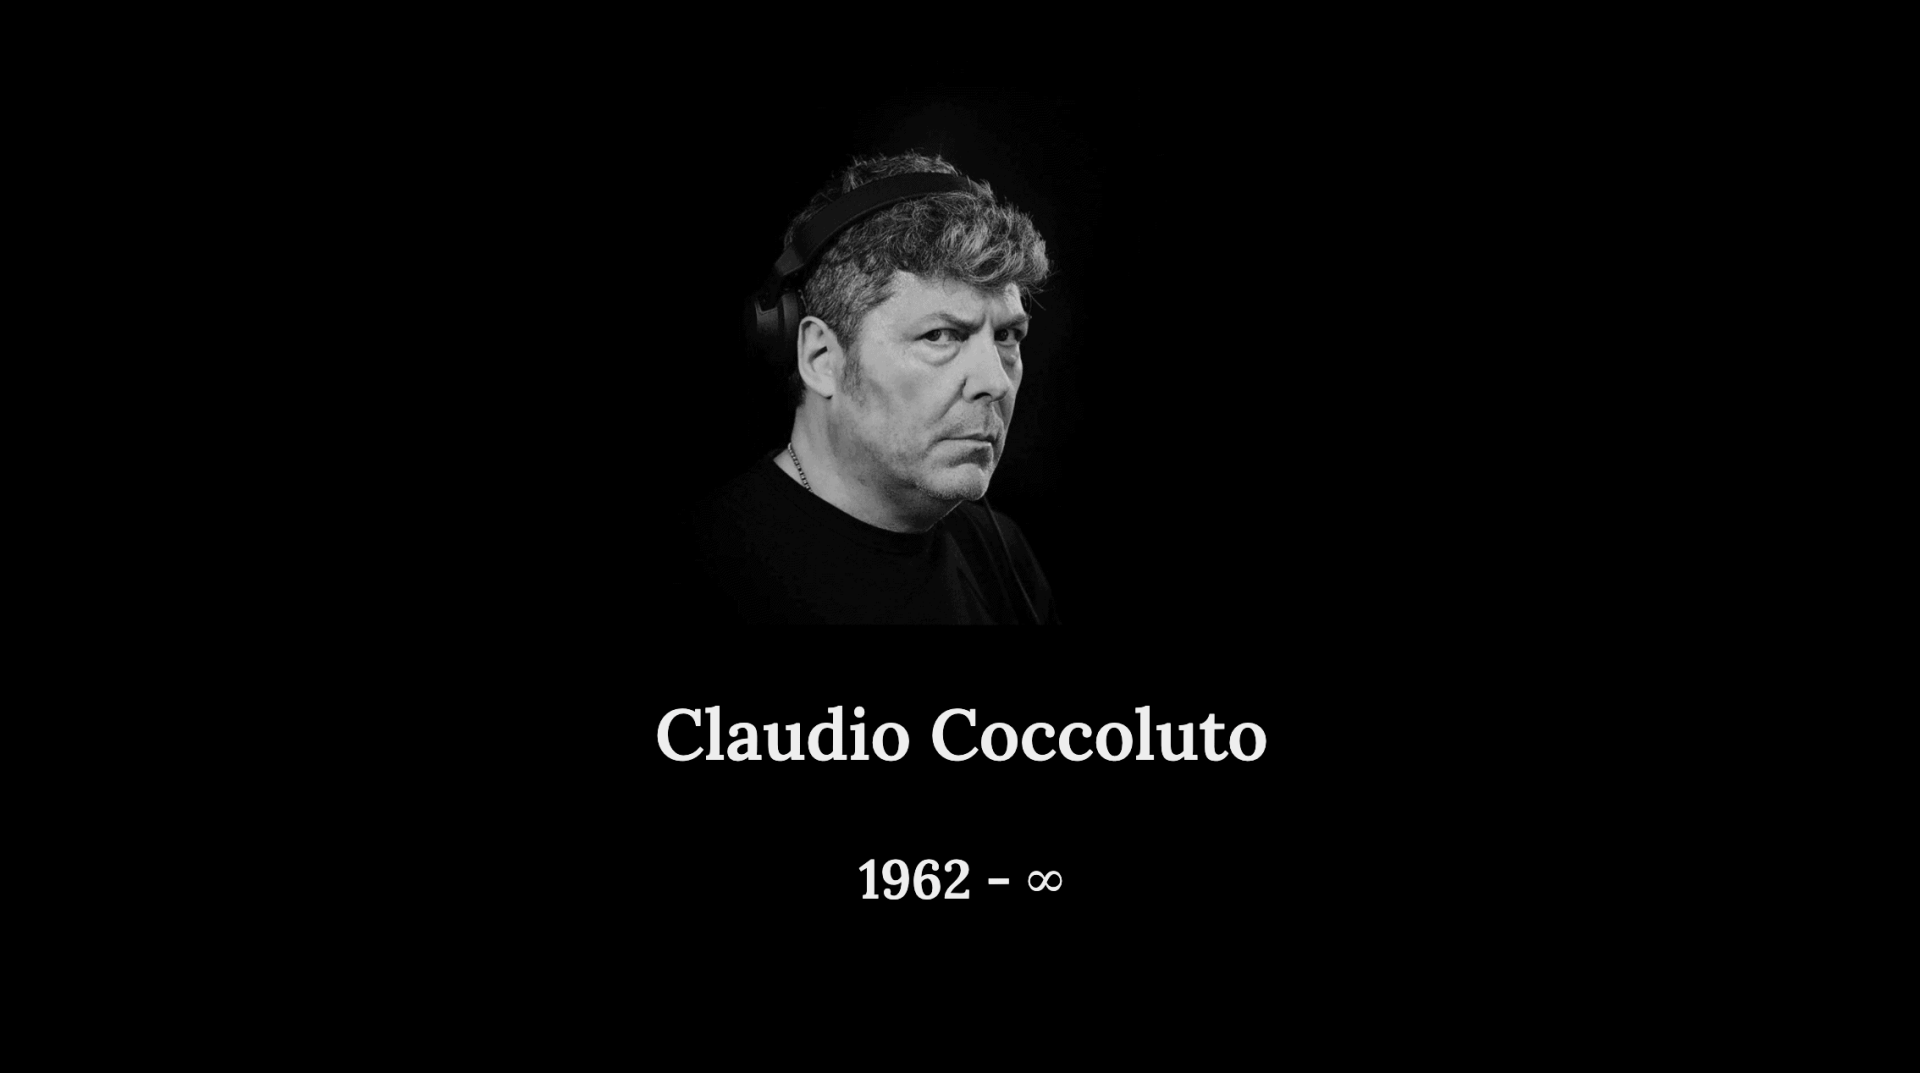 Claudio Coccoluto